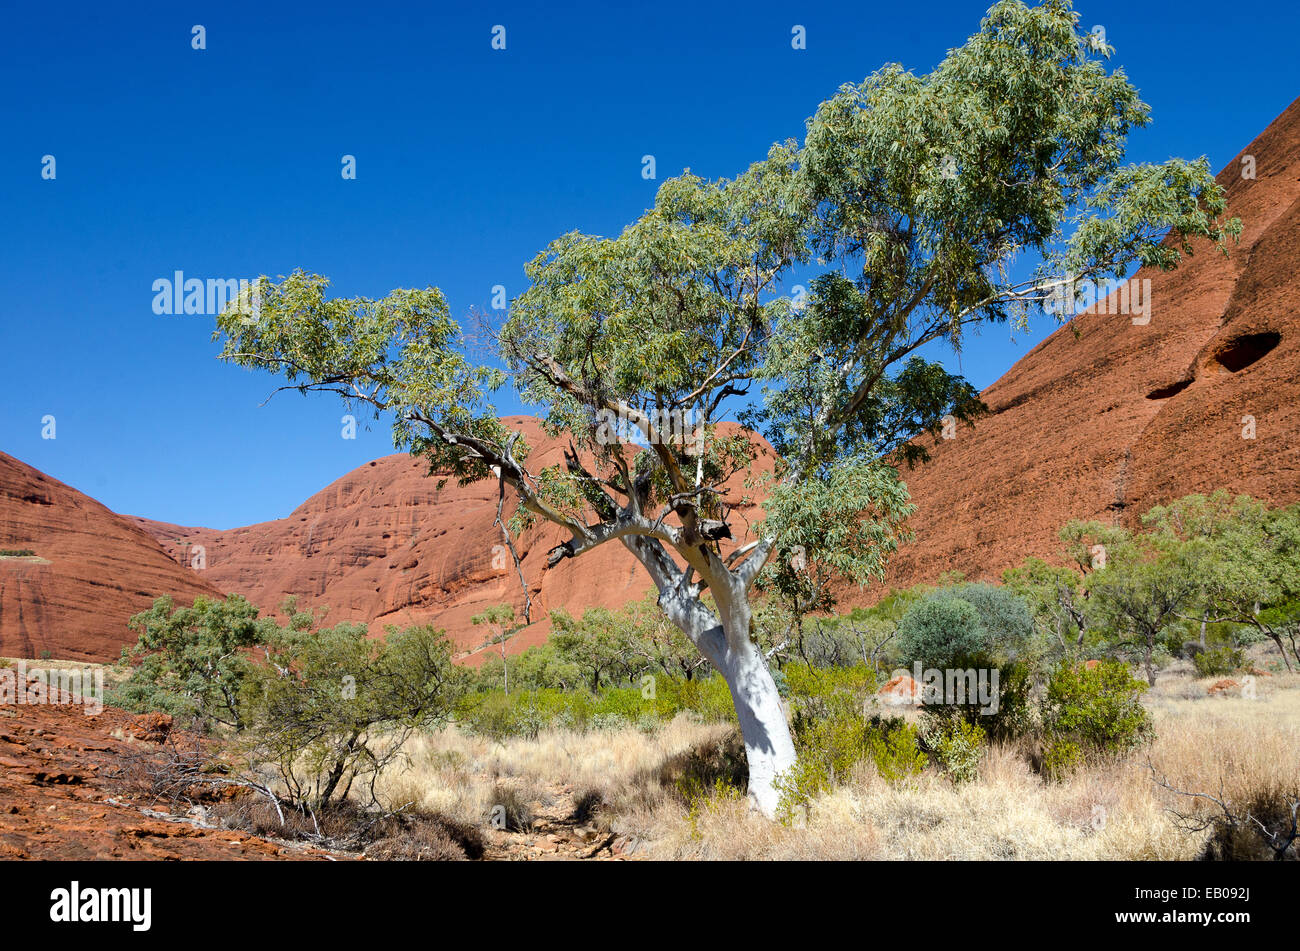 White Gum tree, The Olgas, Northern Territory, Australia Stock Photo